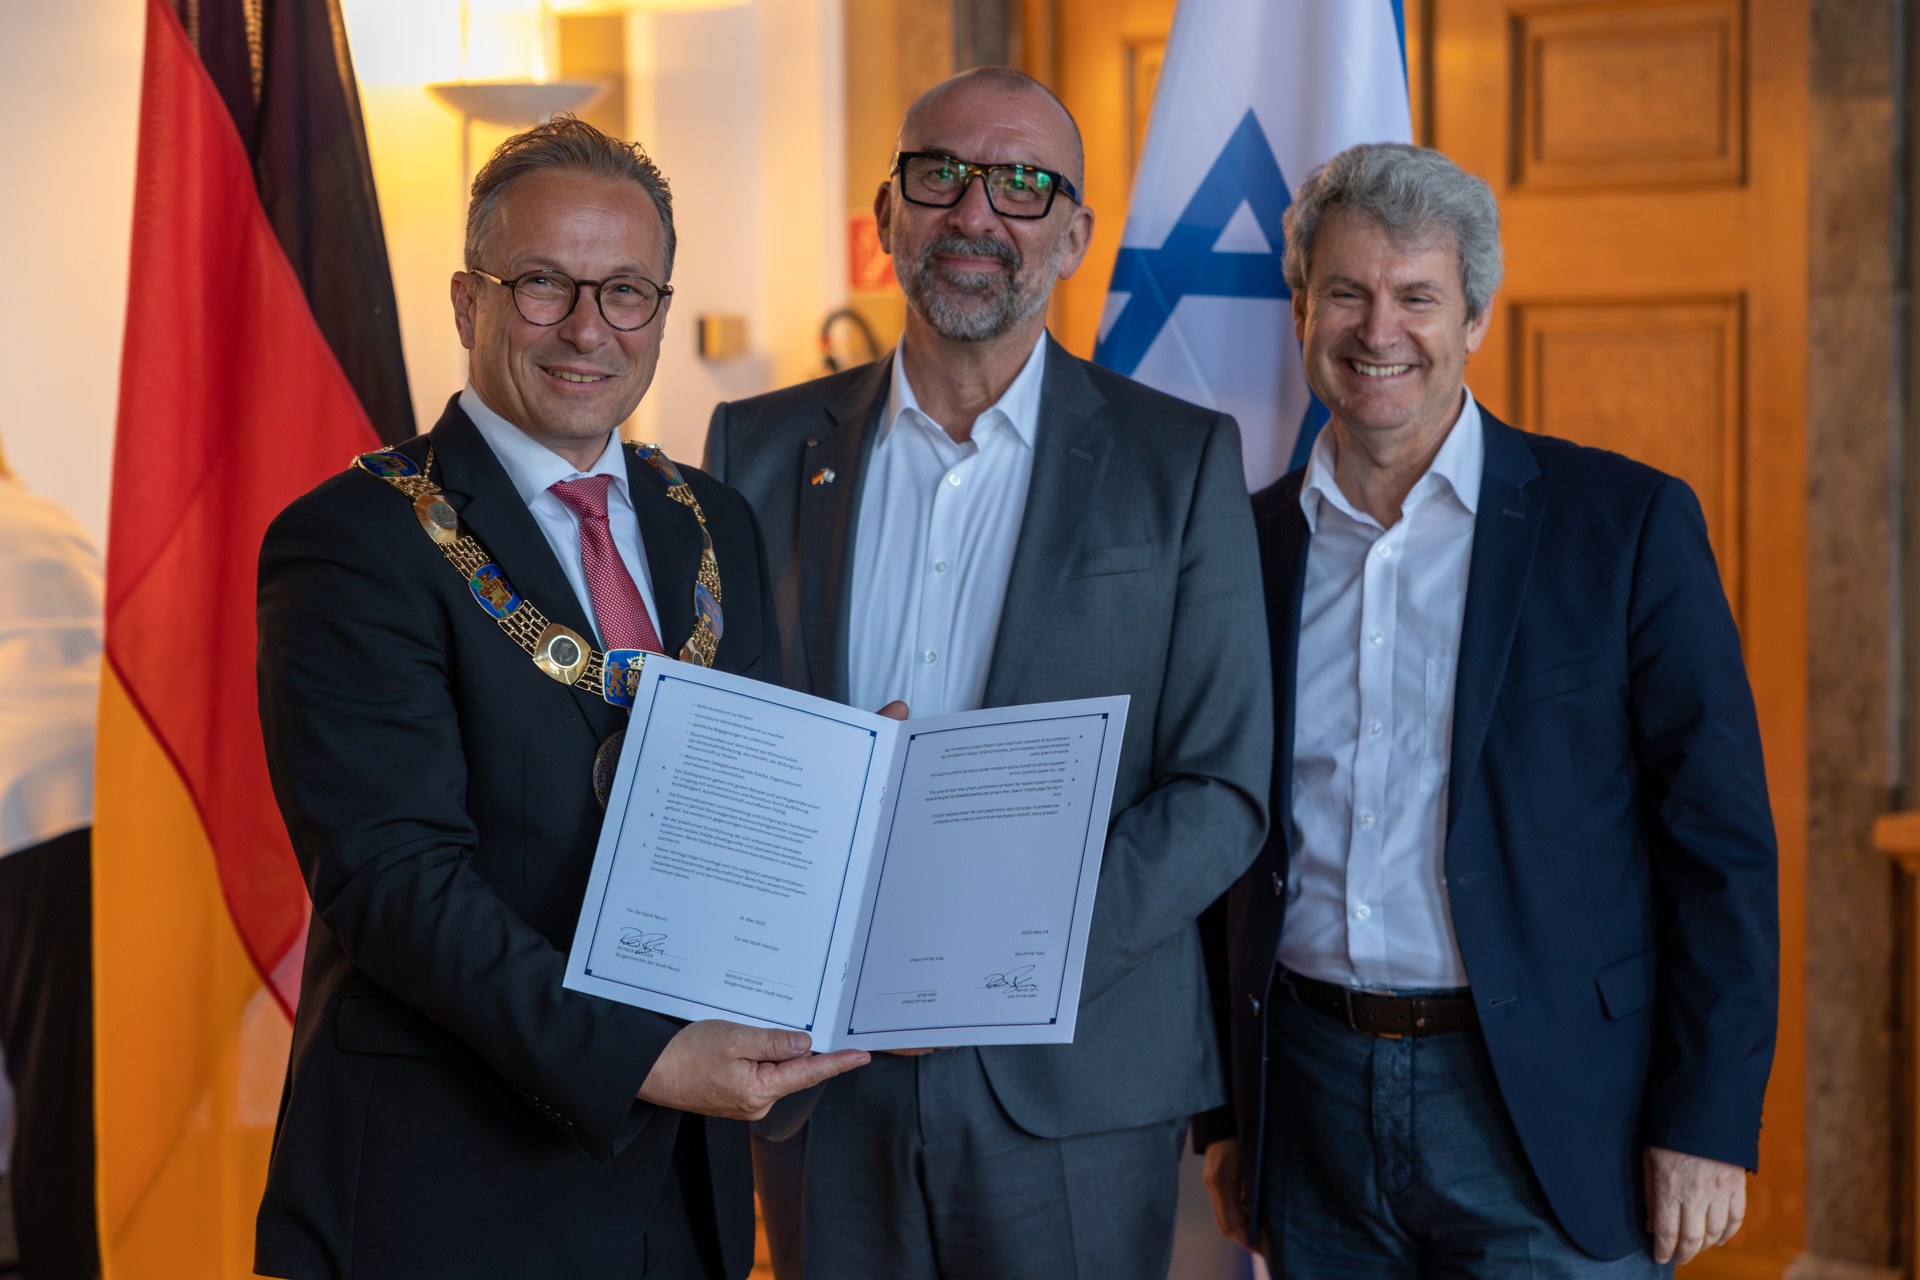 Bürgermeister Reiner Breuer, Bert Römgens und Dr. Oded Horowitz stehen von den Flaggen Deutschlands und Israels. Bürgermeister Breuer hält den unterschriebenen Partnerschaftsvertrag hoch.